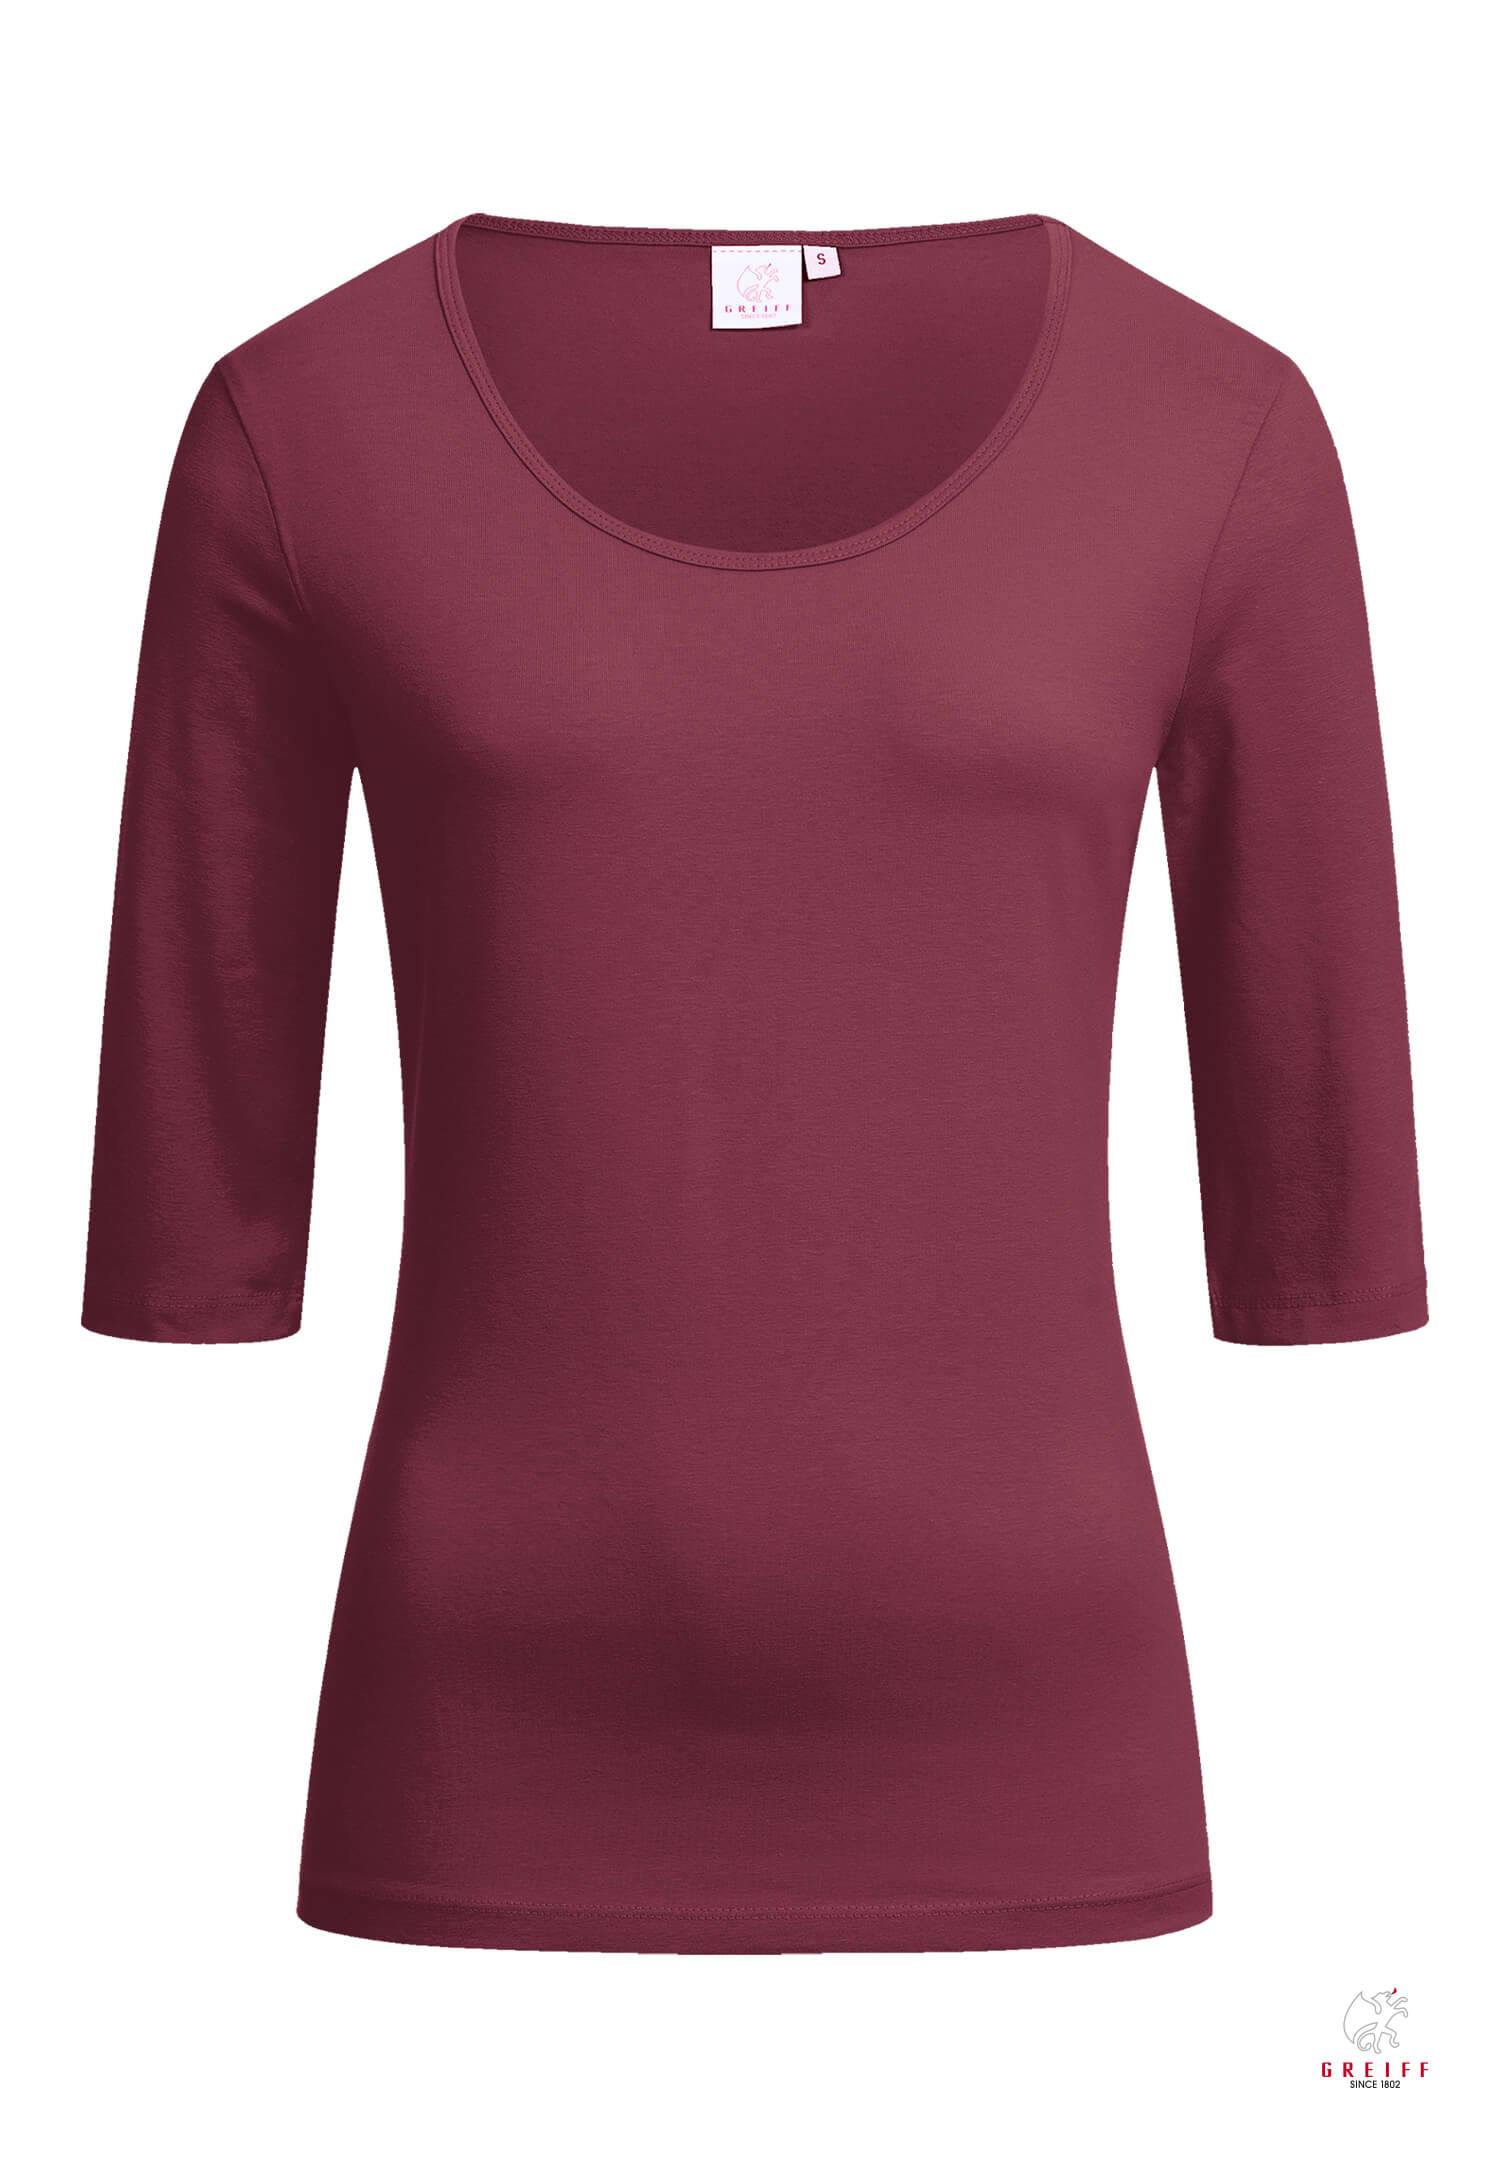 Damen Shirt 3/4 - burgund - 3XL